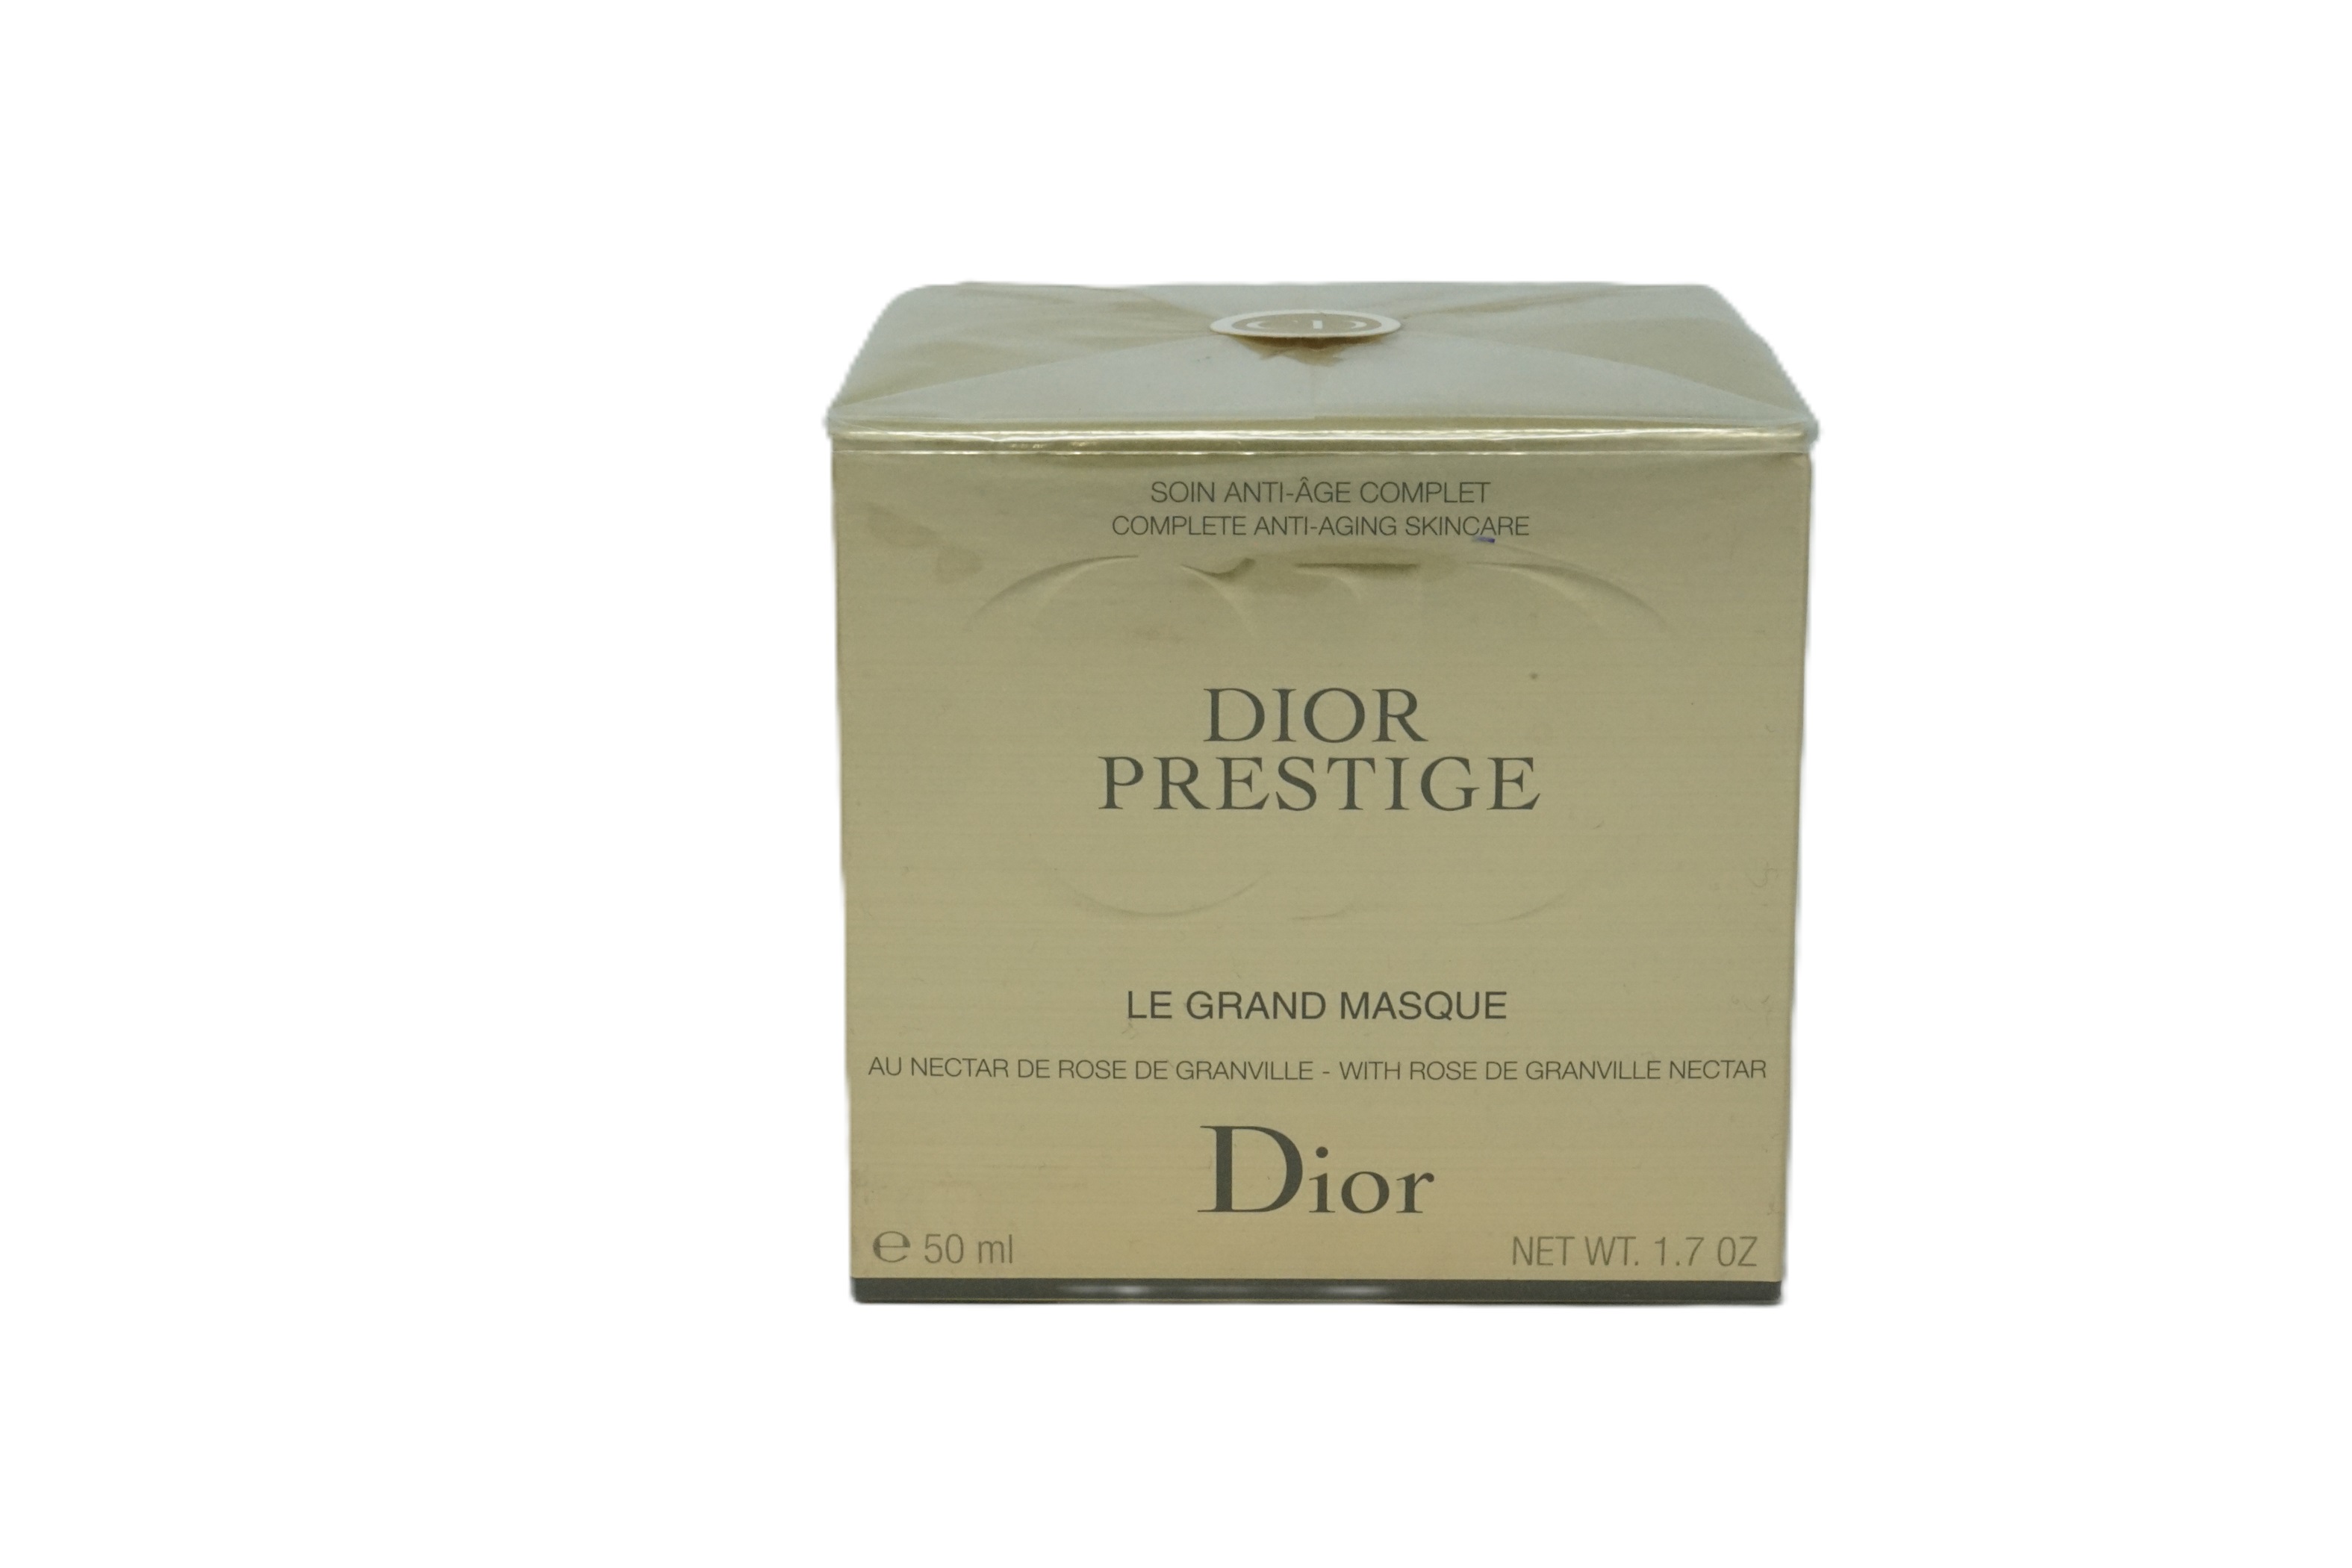 Dior Prestige Le Grand Masque Gesichtsmaske mit Nektar der Rose de Granville 50 ml